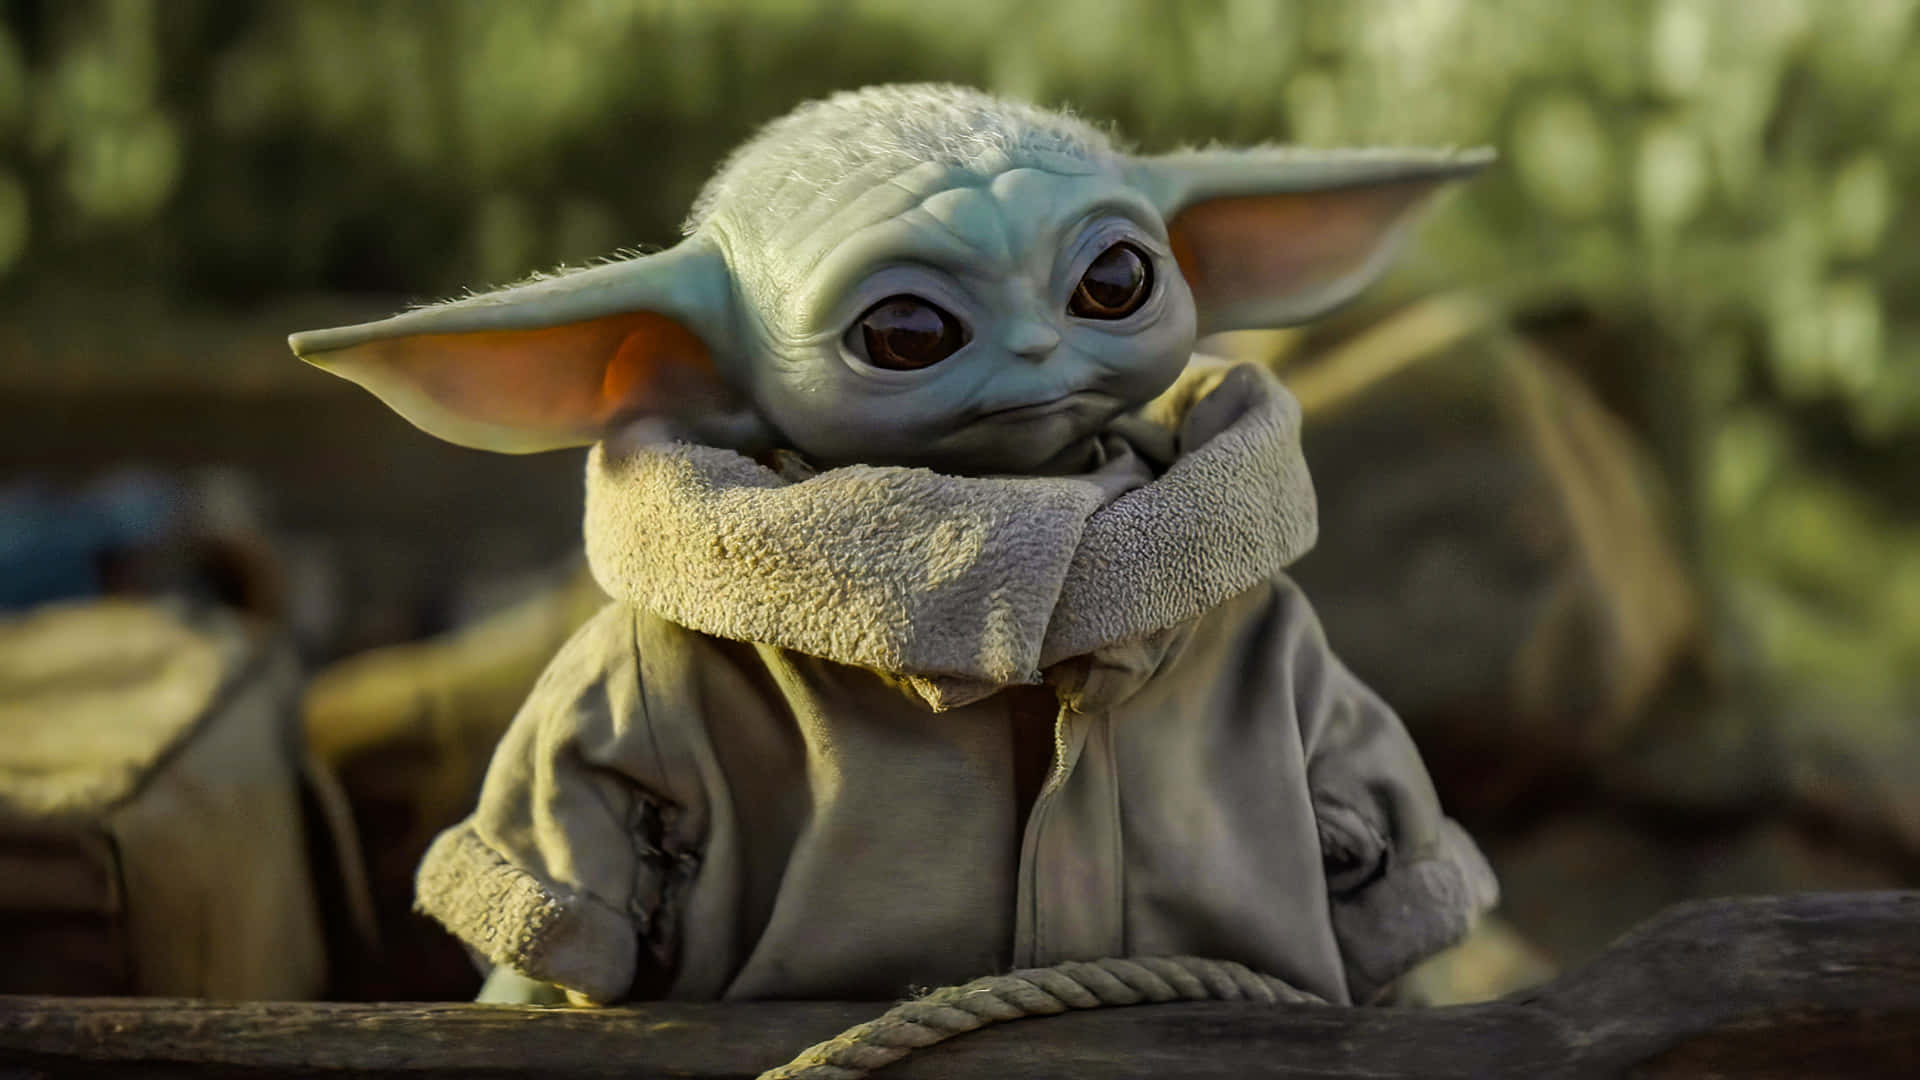 Discover the adorable Baby Yoda